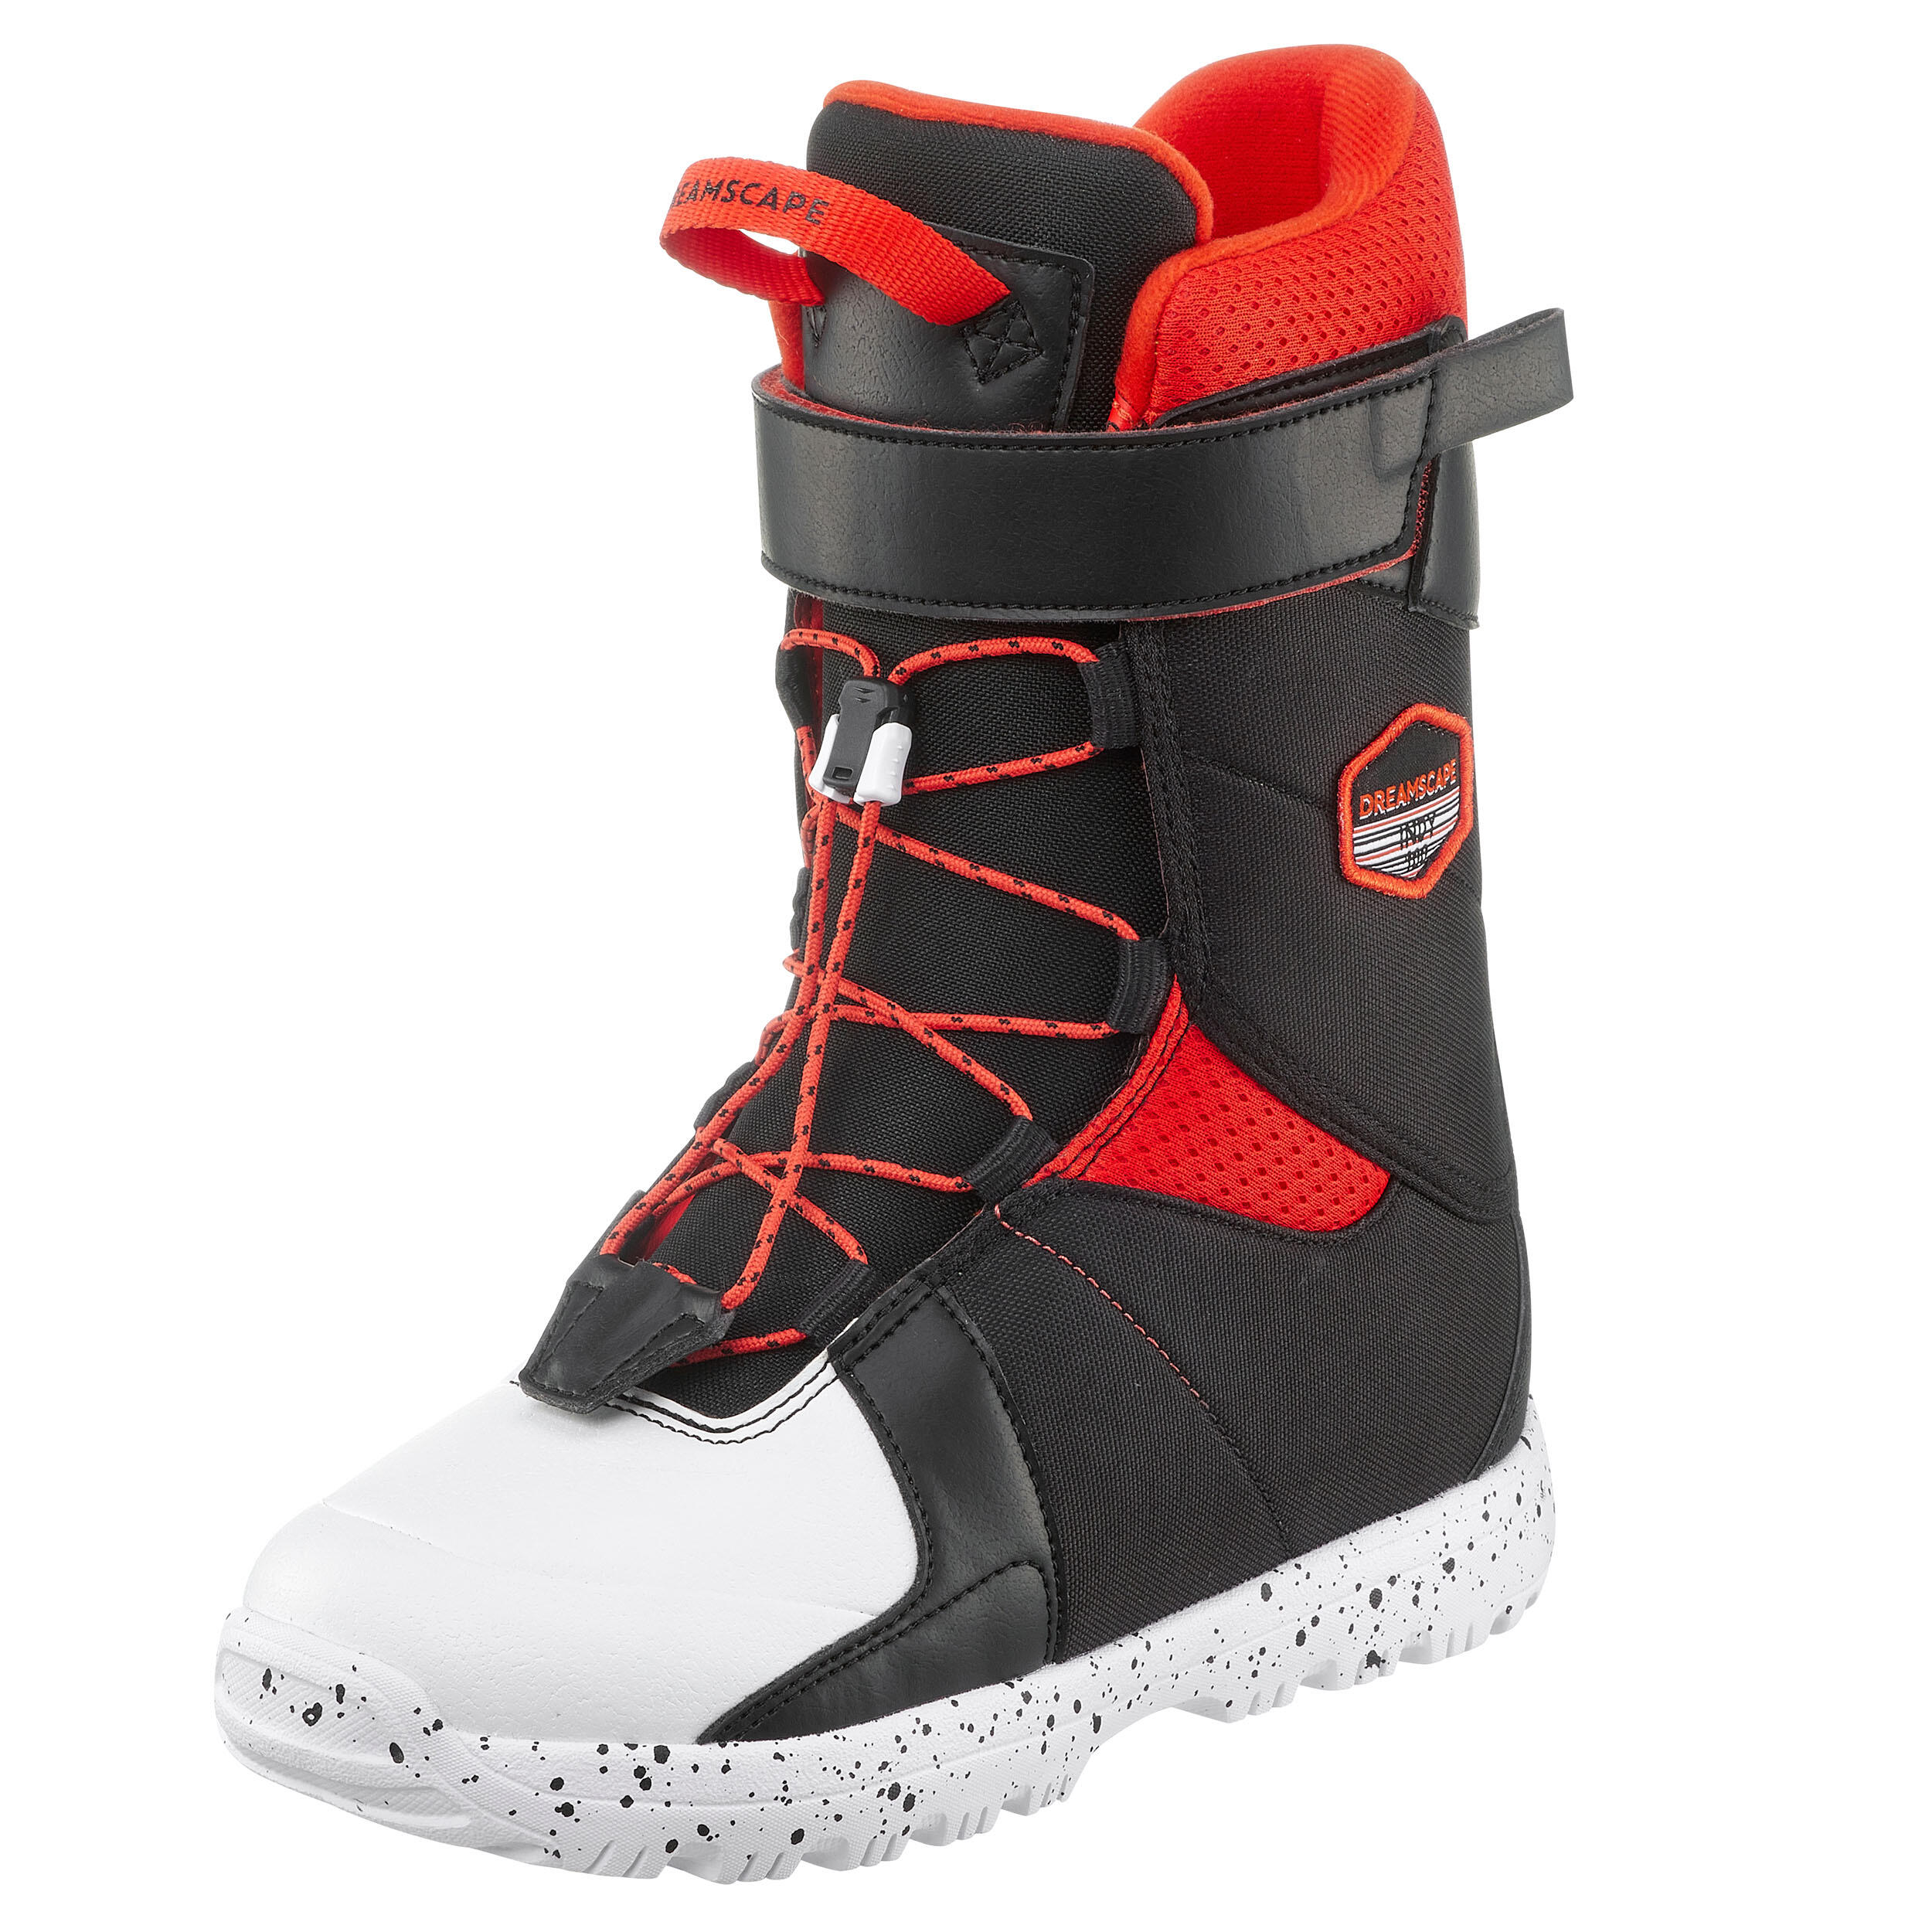 disponibile in tutte le misure colore: Nero AIRTRACKS Snowboard Boots Star Black Scarponi da snowboard 